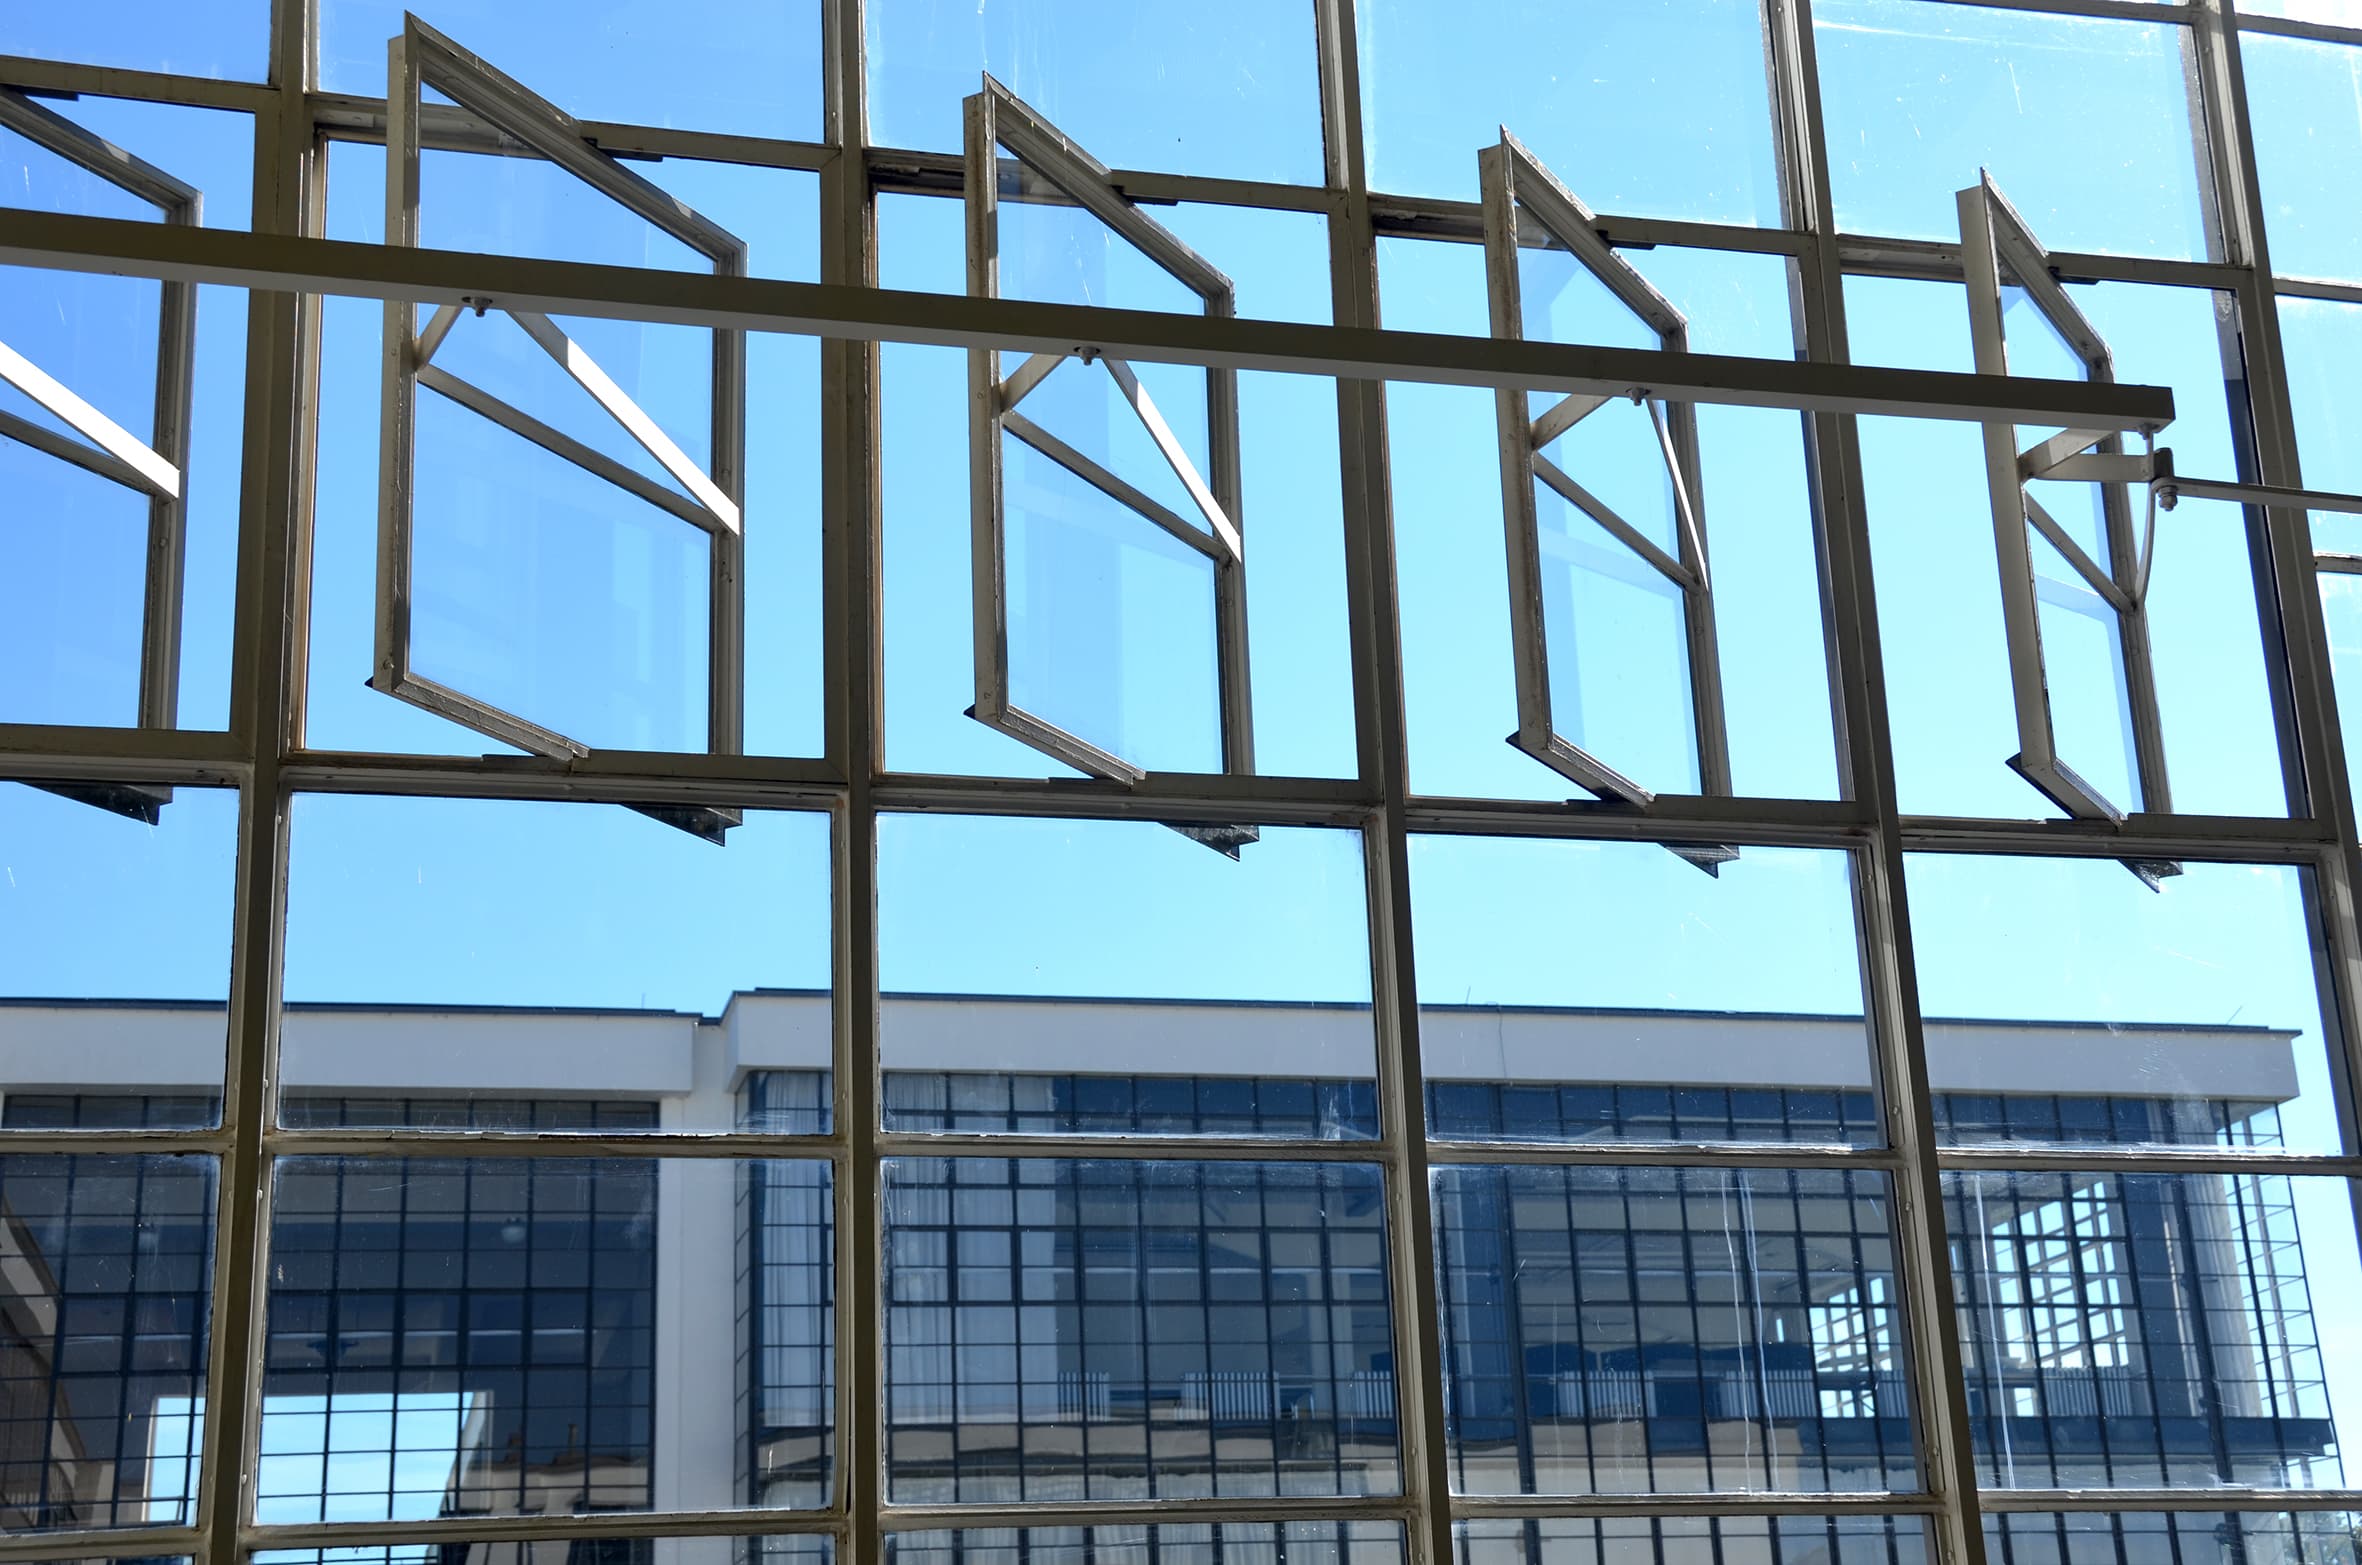 Fenster im Bauhaus